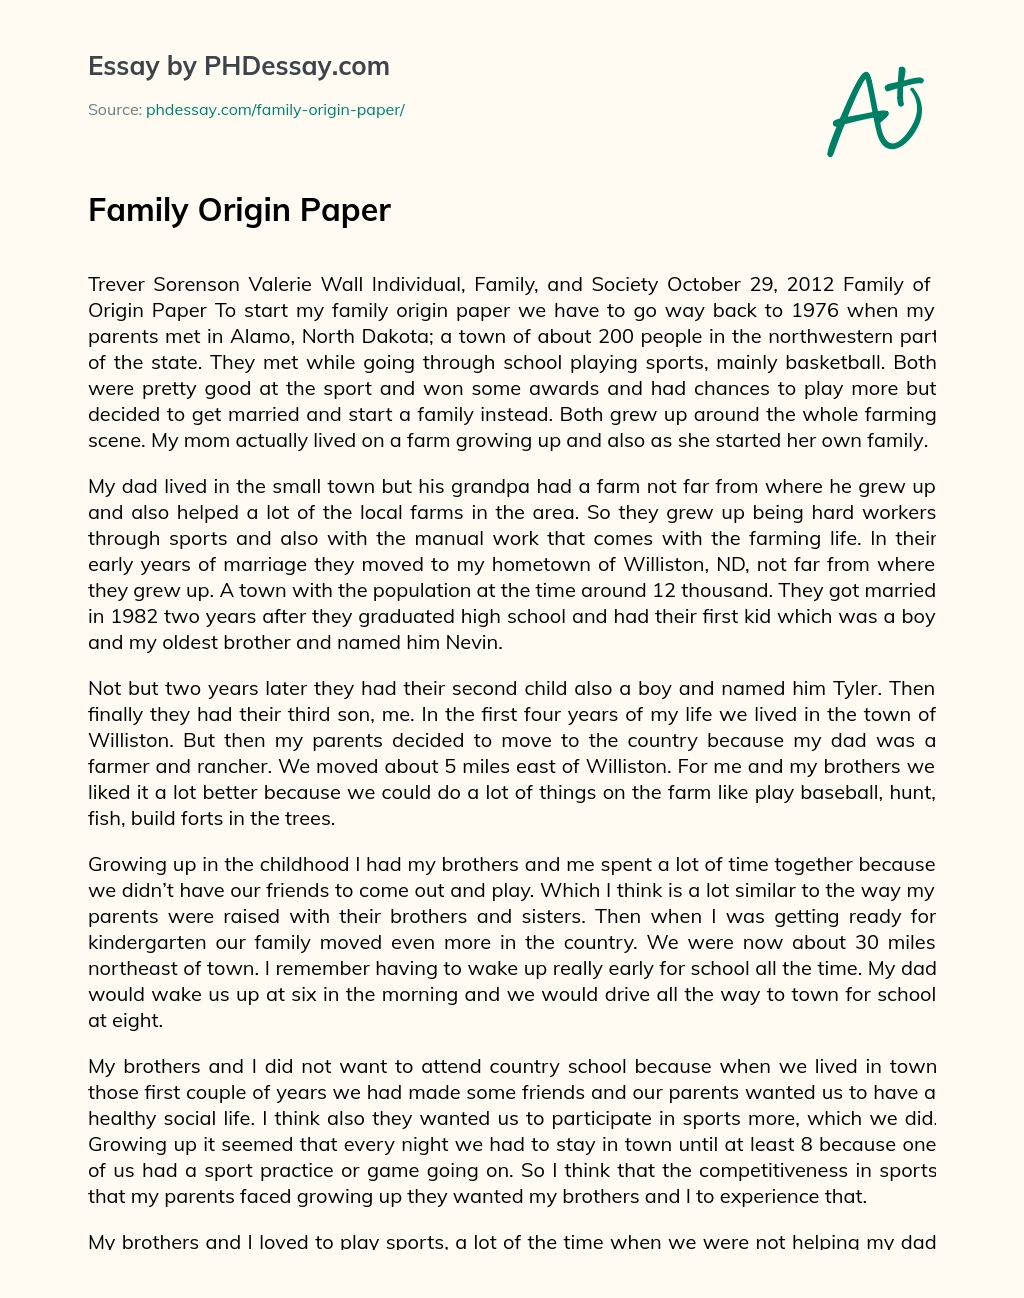 Family Origin Paper essay